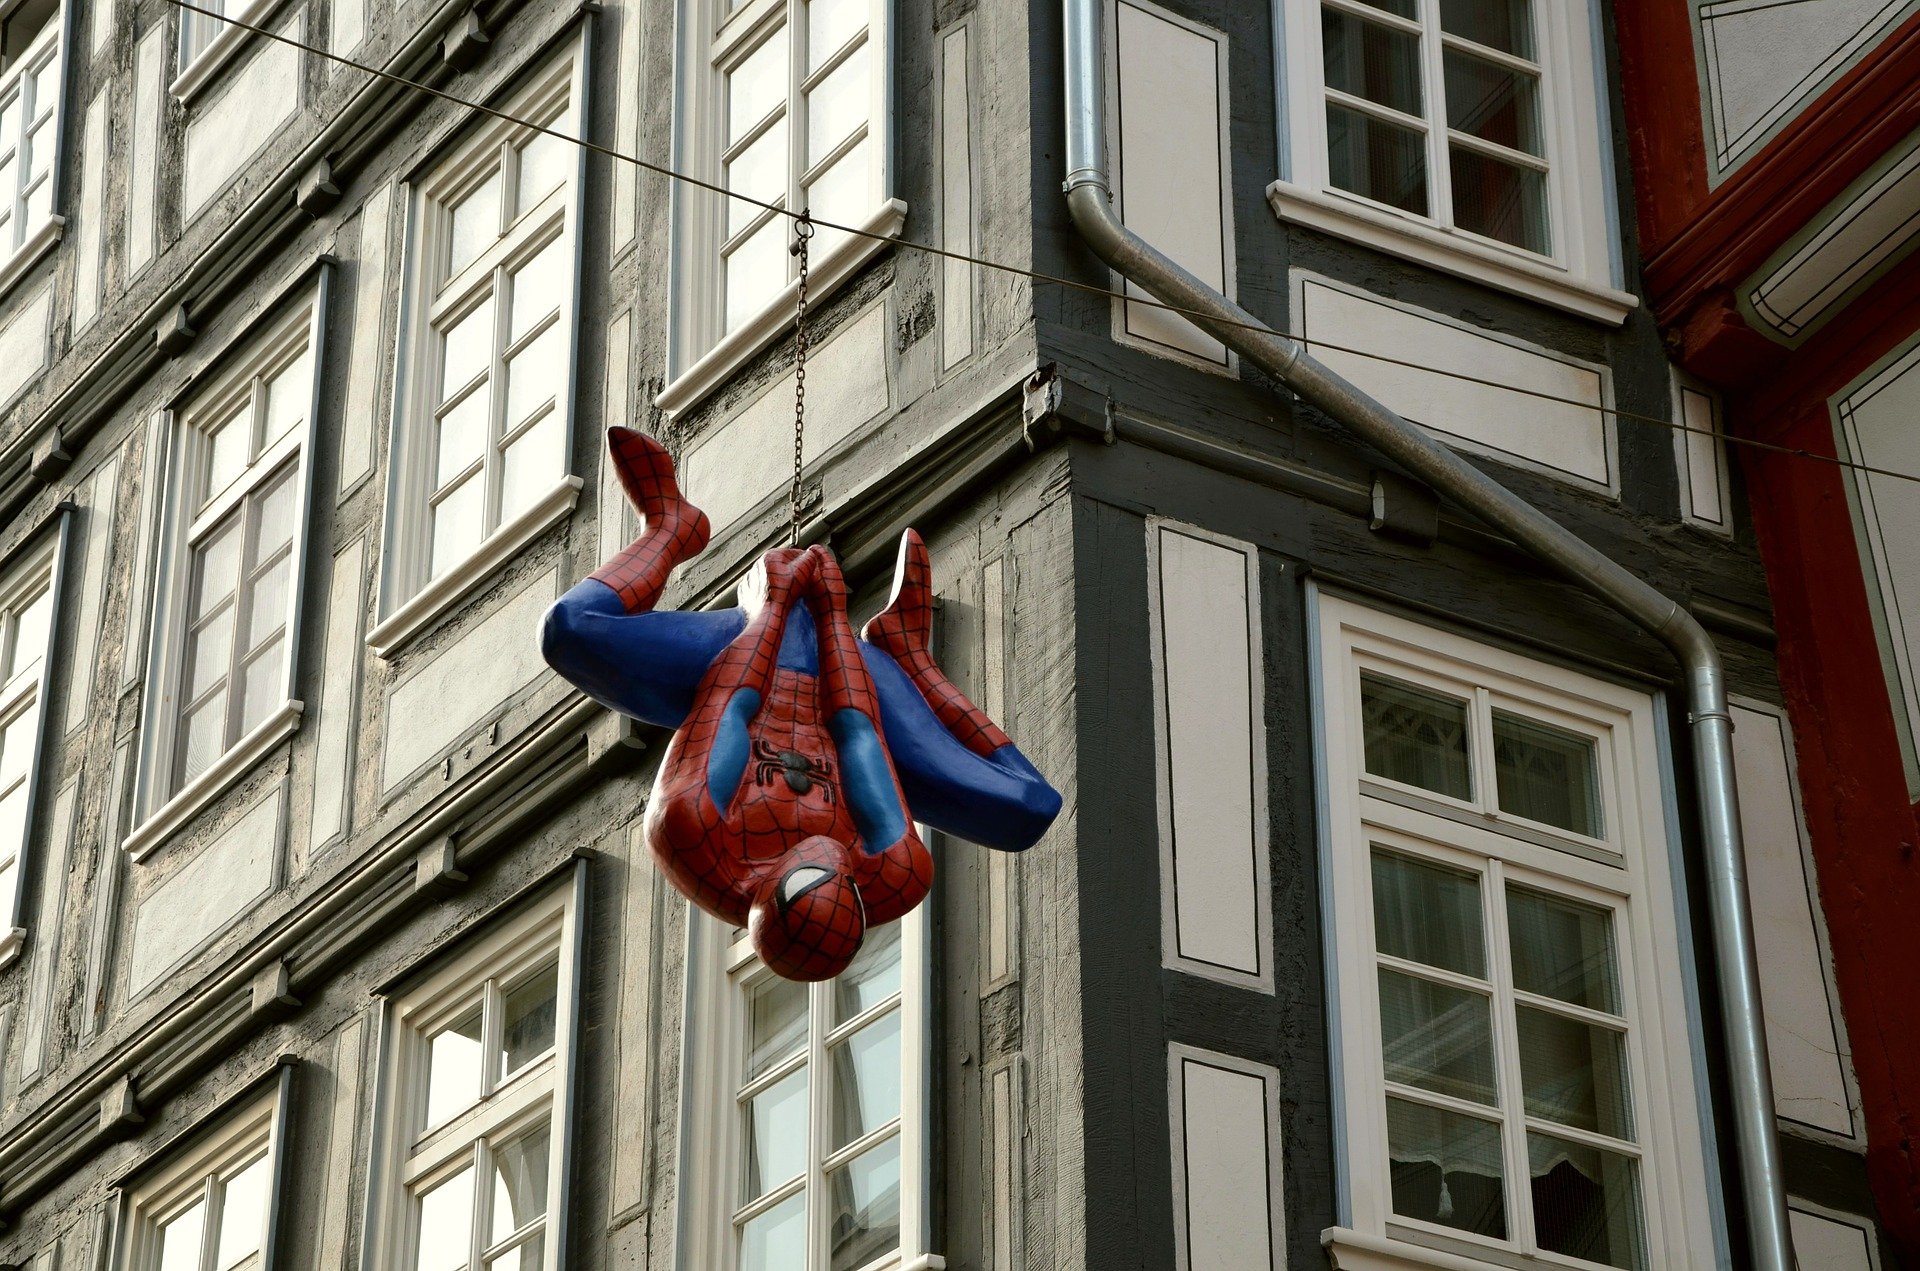 Na ficção, Peter Parker ganha poderes ao ser picado por uma aranha radioativa (Fonte: Pixabay)